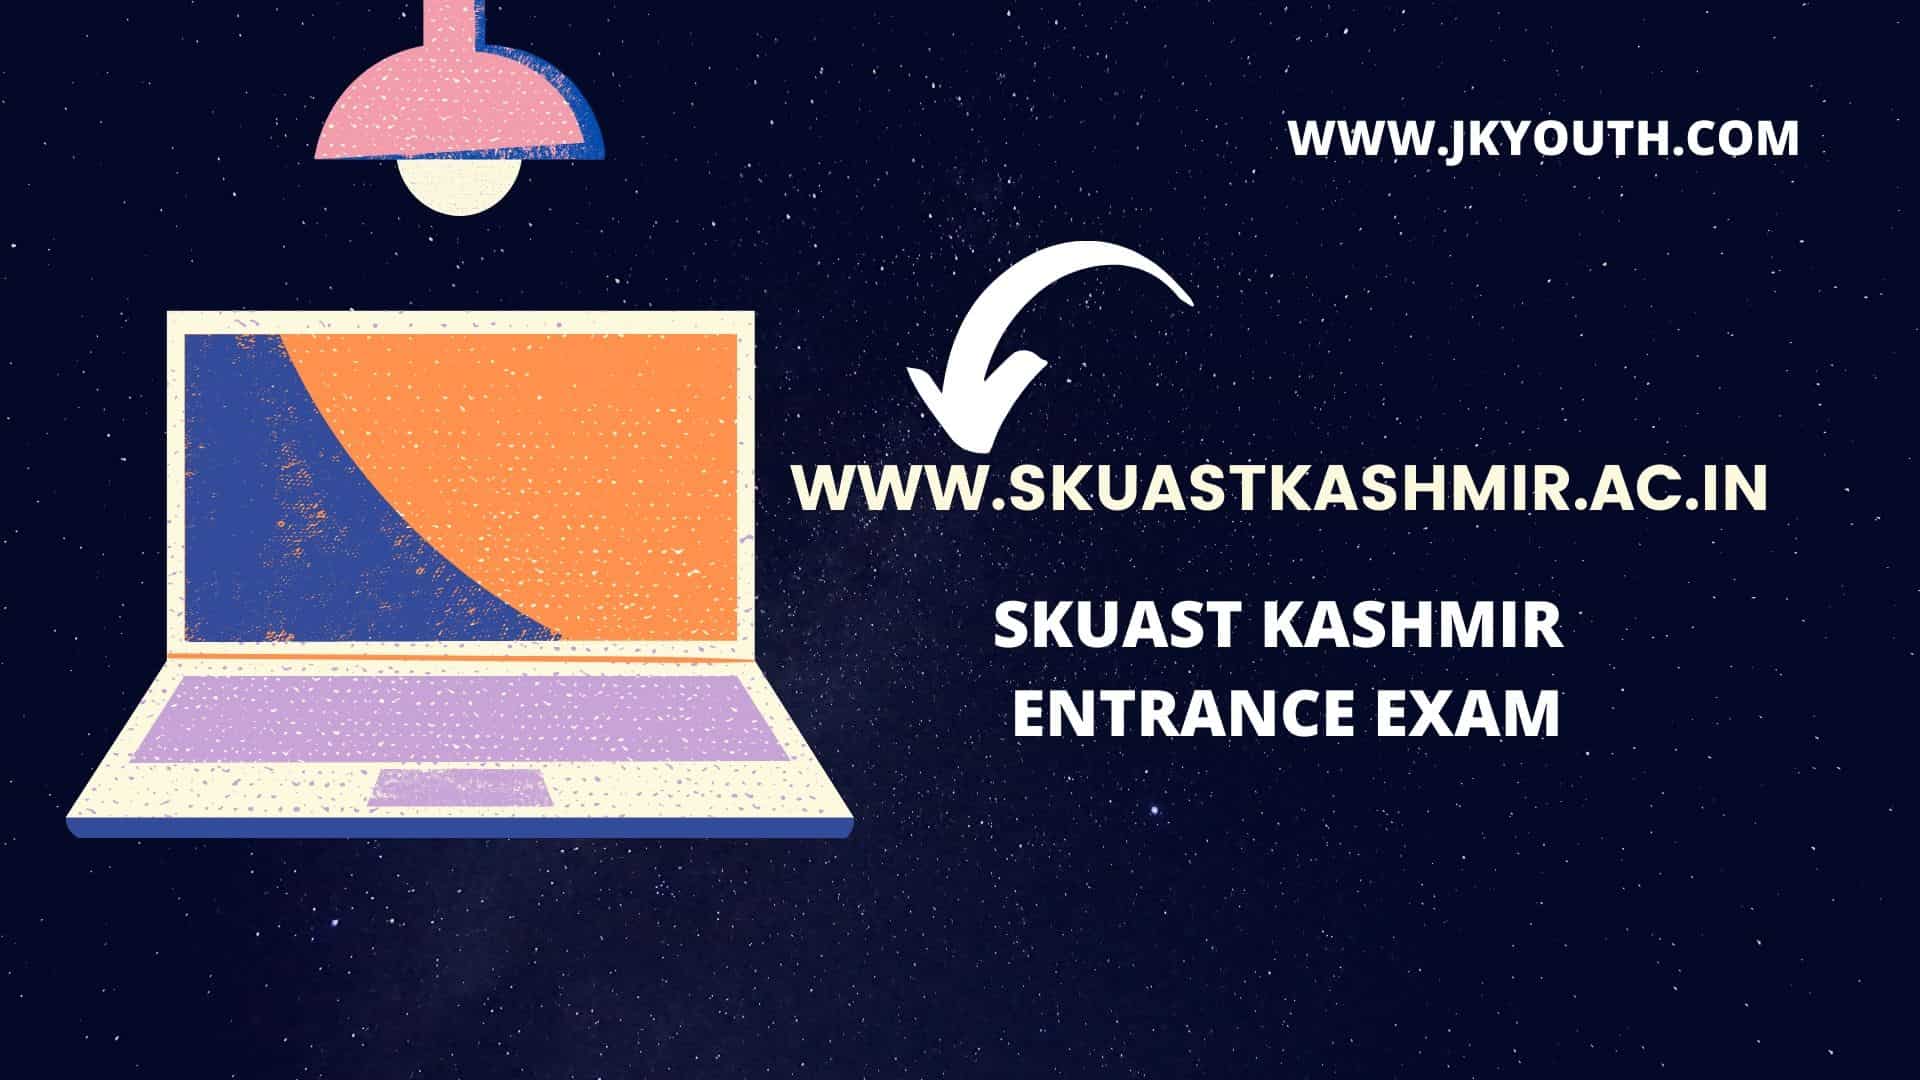 SKUAST Kashmir Admission 2021 22 Check Details JKYouth